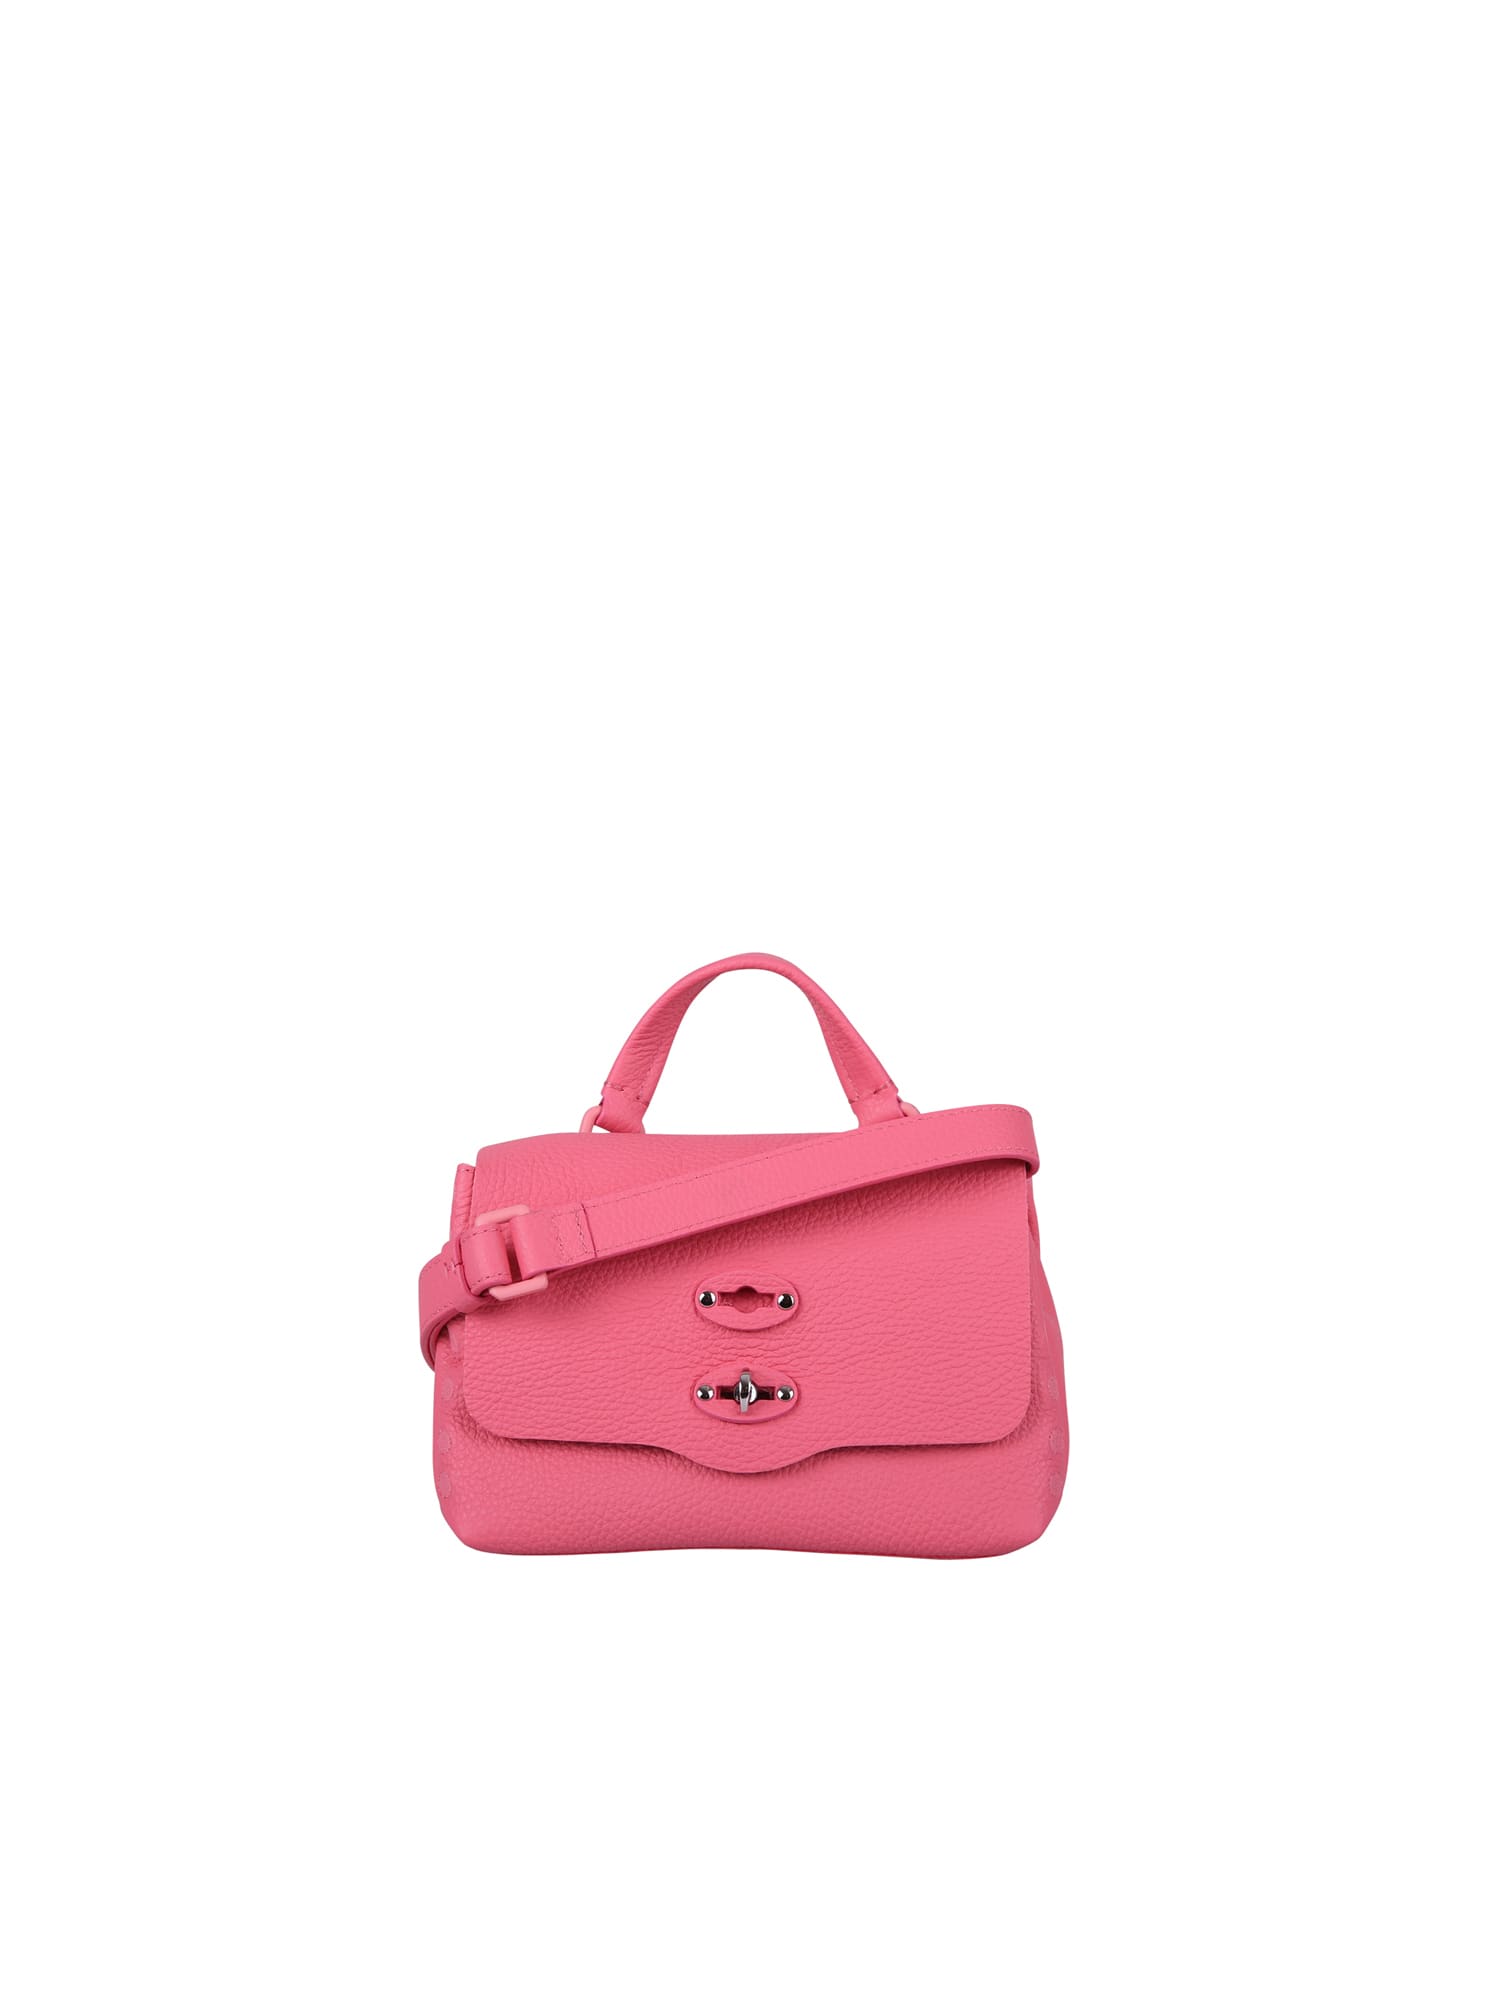 Zanellato Postina Baby Bag In Pink